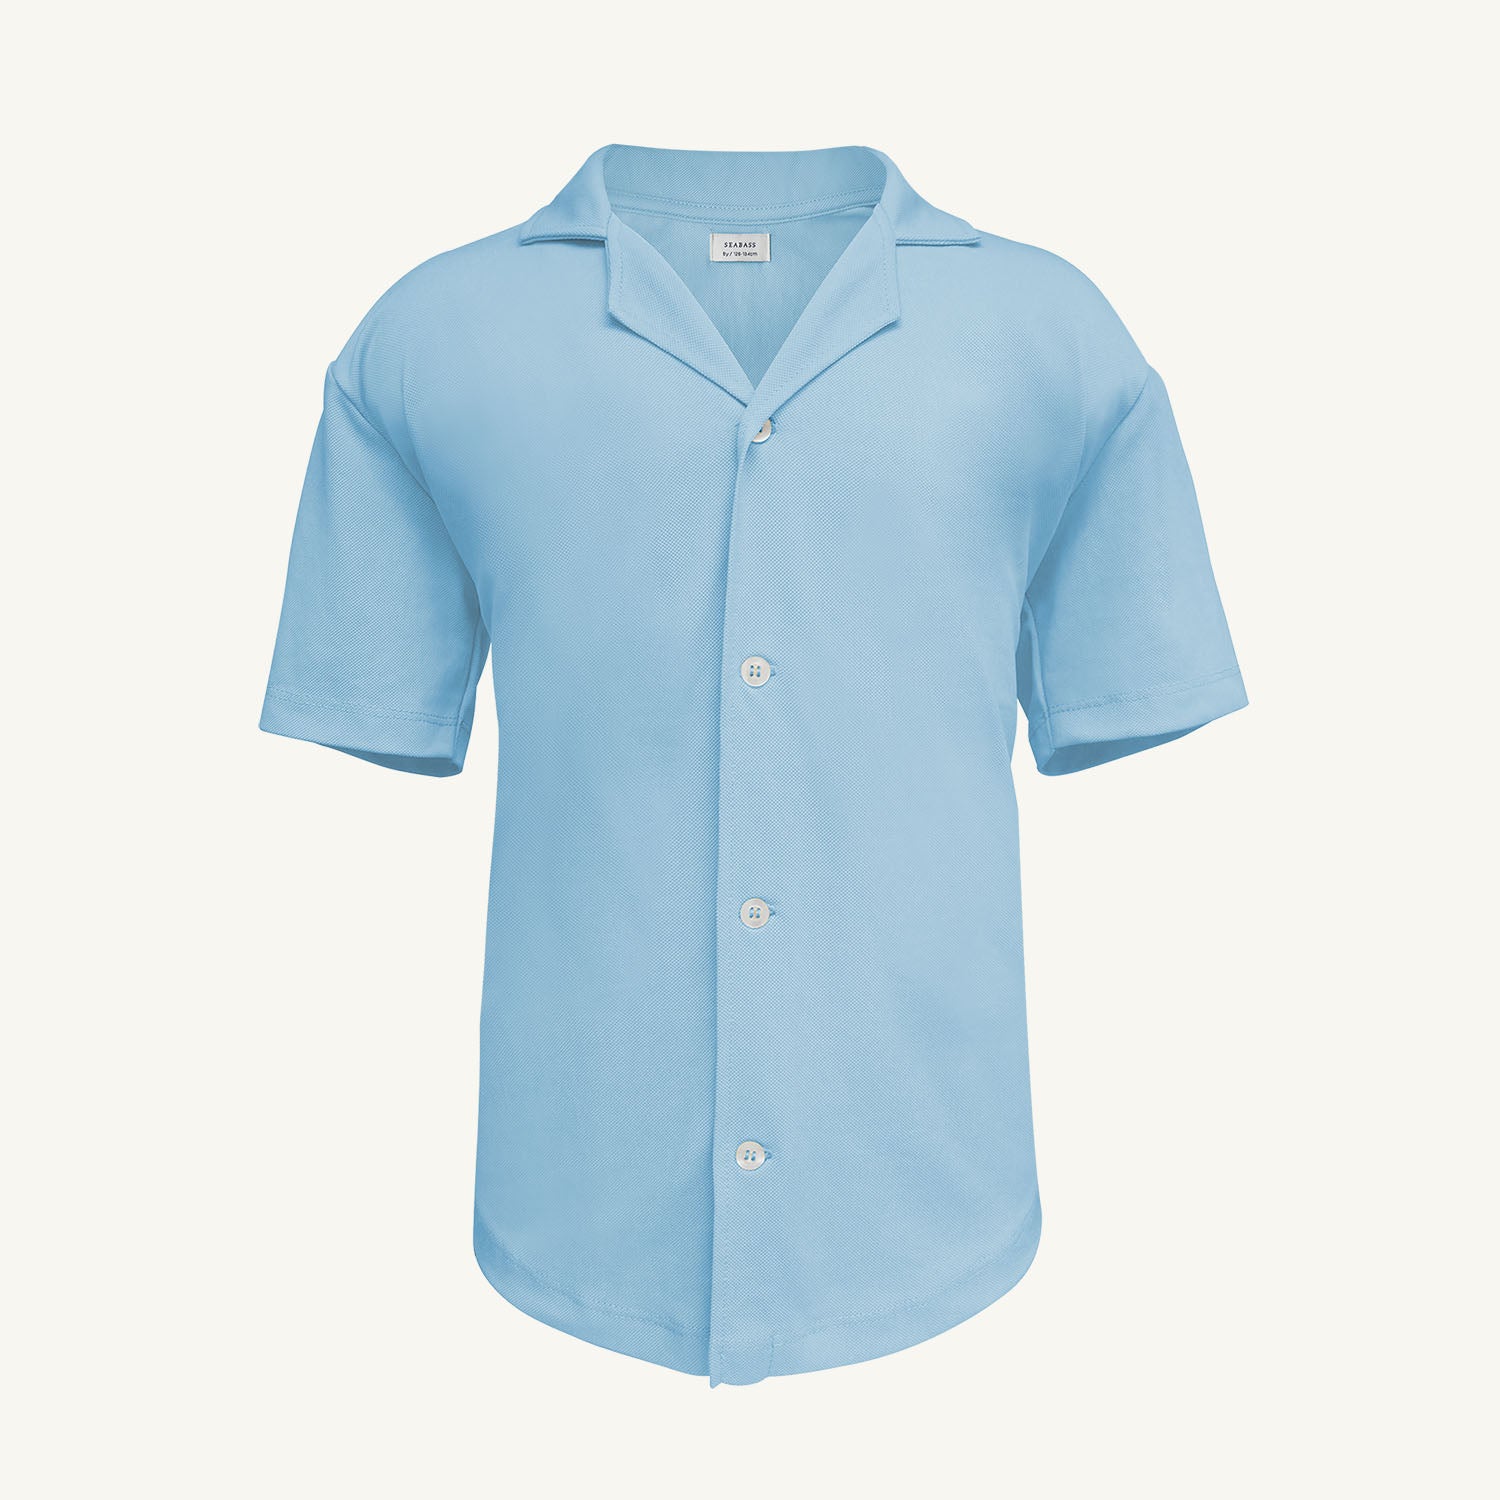 Camisa corta de niño con protección solar - azul claro